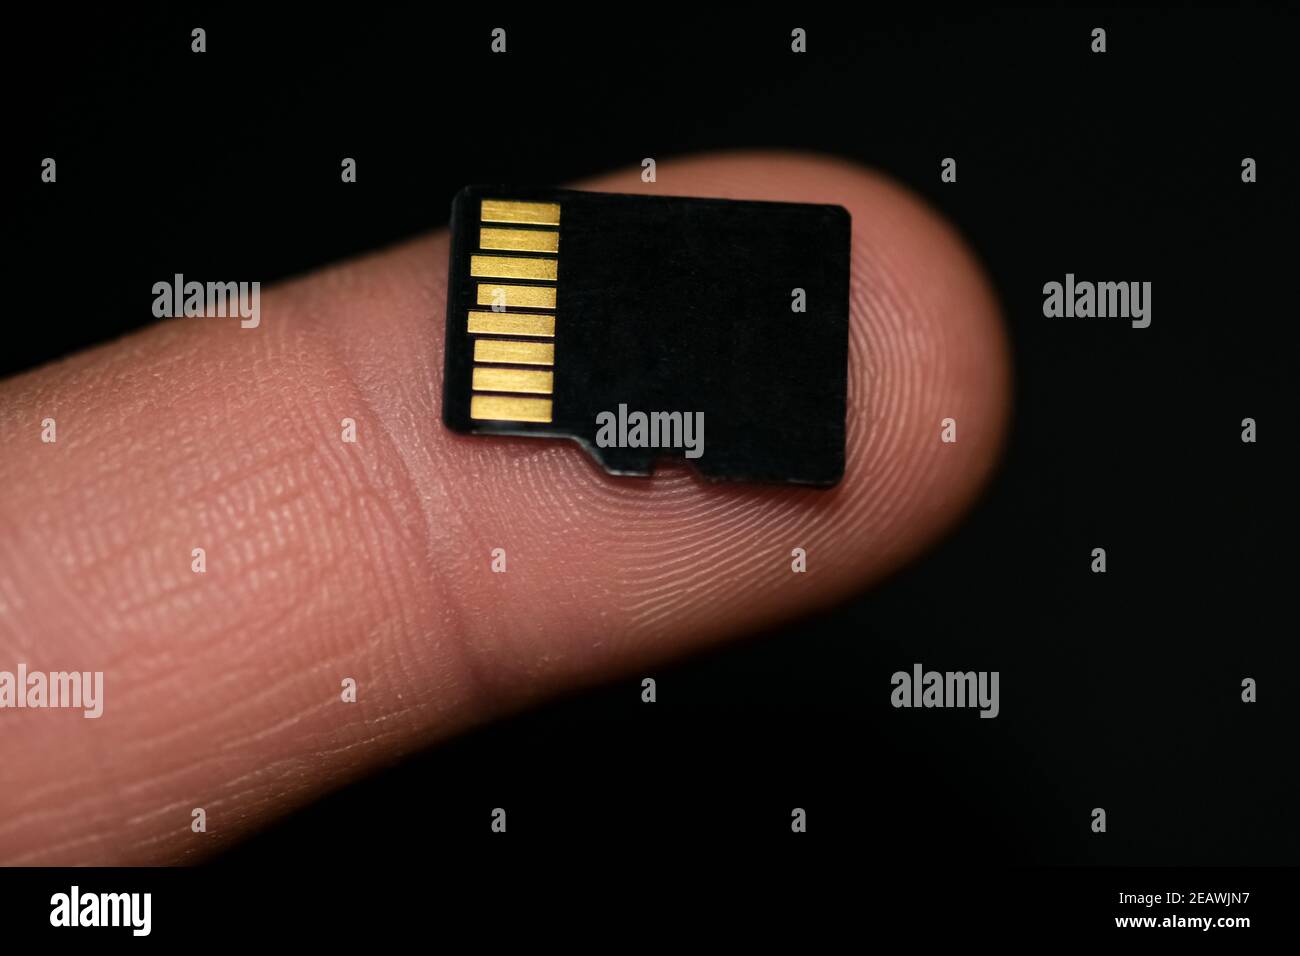 Scheda microSD su un dito umano su sfondo nero, dati hi tech dispositivi di archiviazione Foto Stock